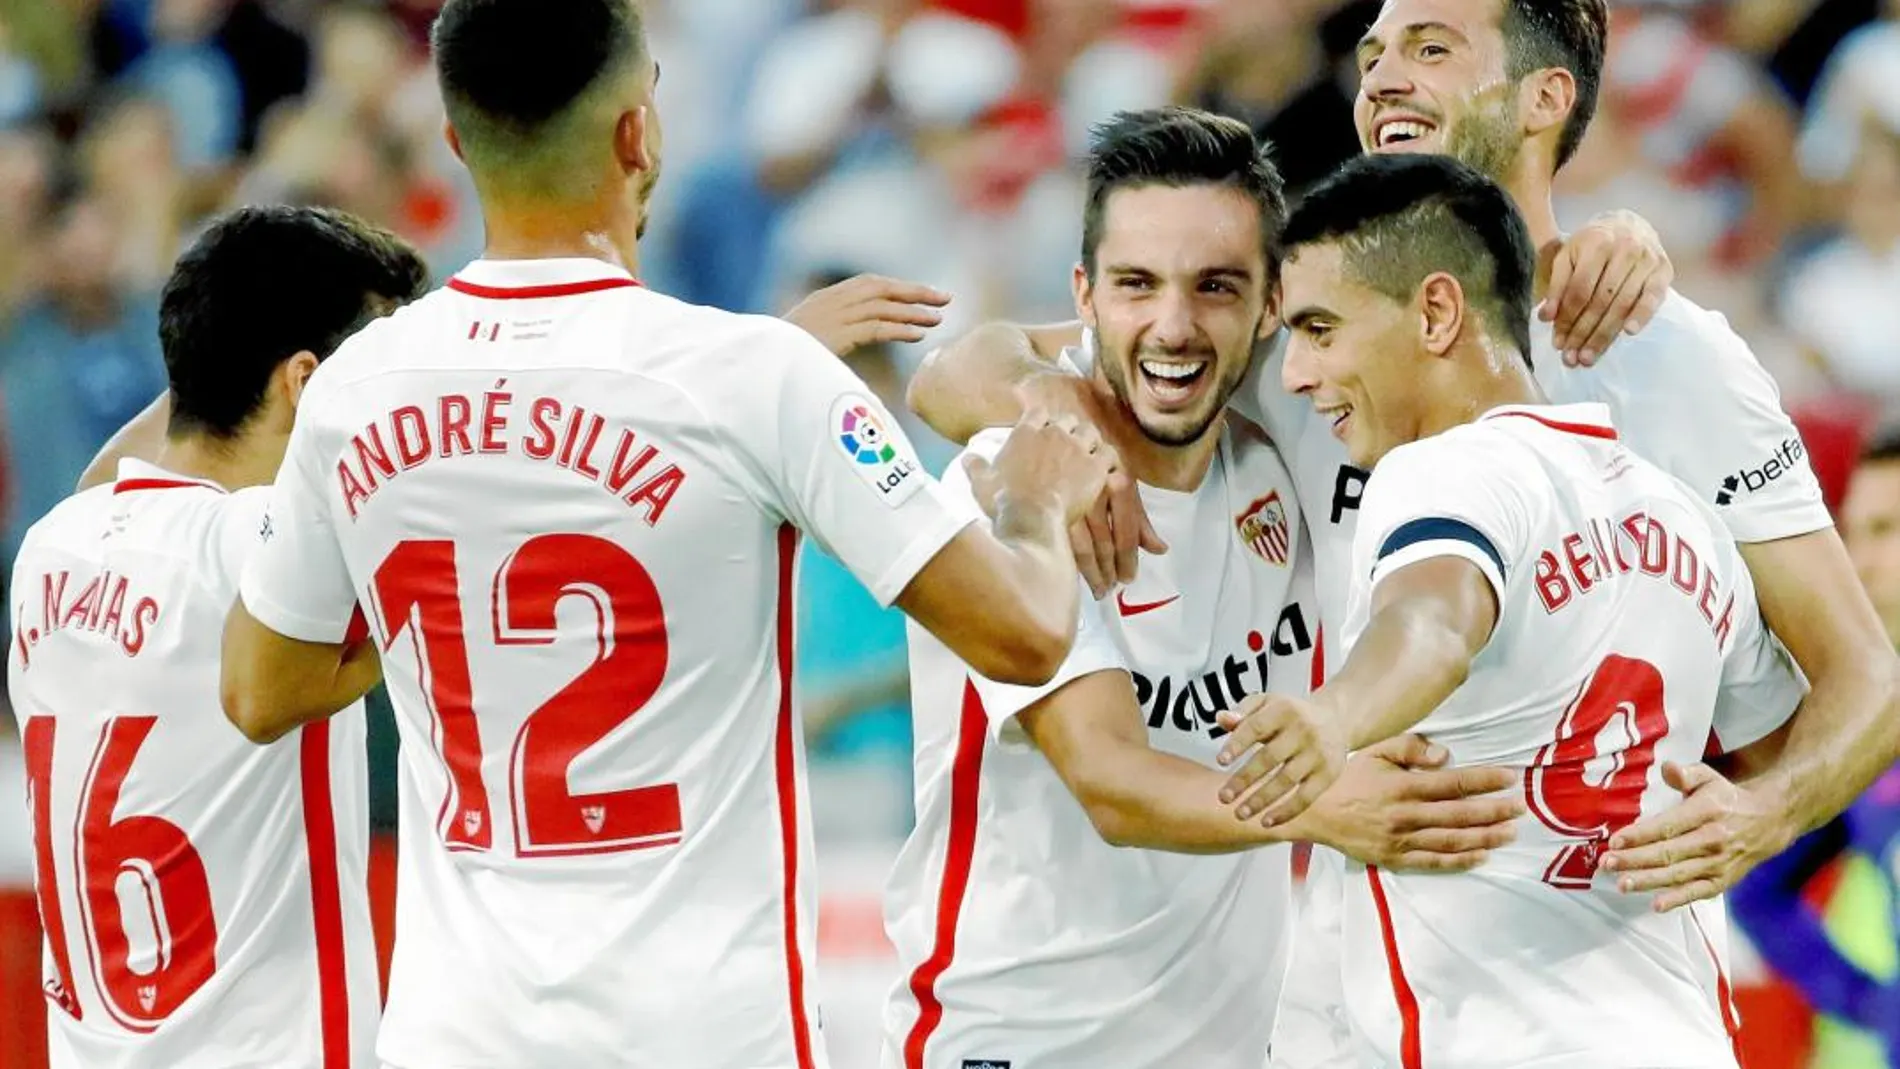 Los jugadores del Sevilla celebran uno de los goles que marcaron al Celta. Ganaron 2-1 y se colocaron líderes de LaLiga / Efe